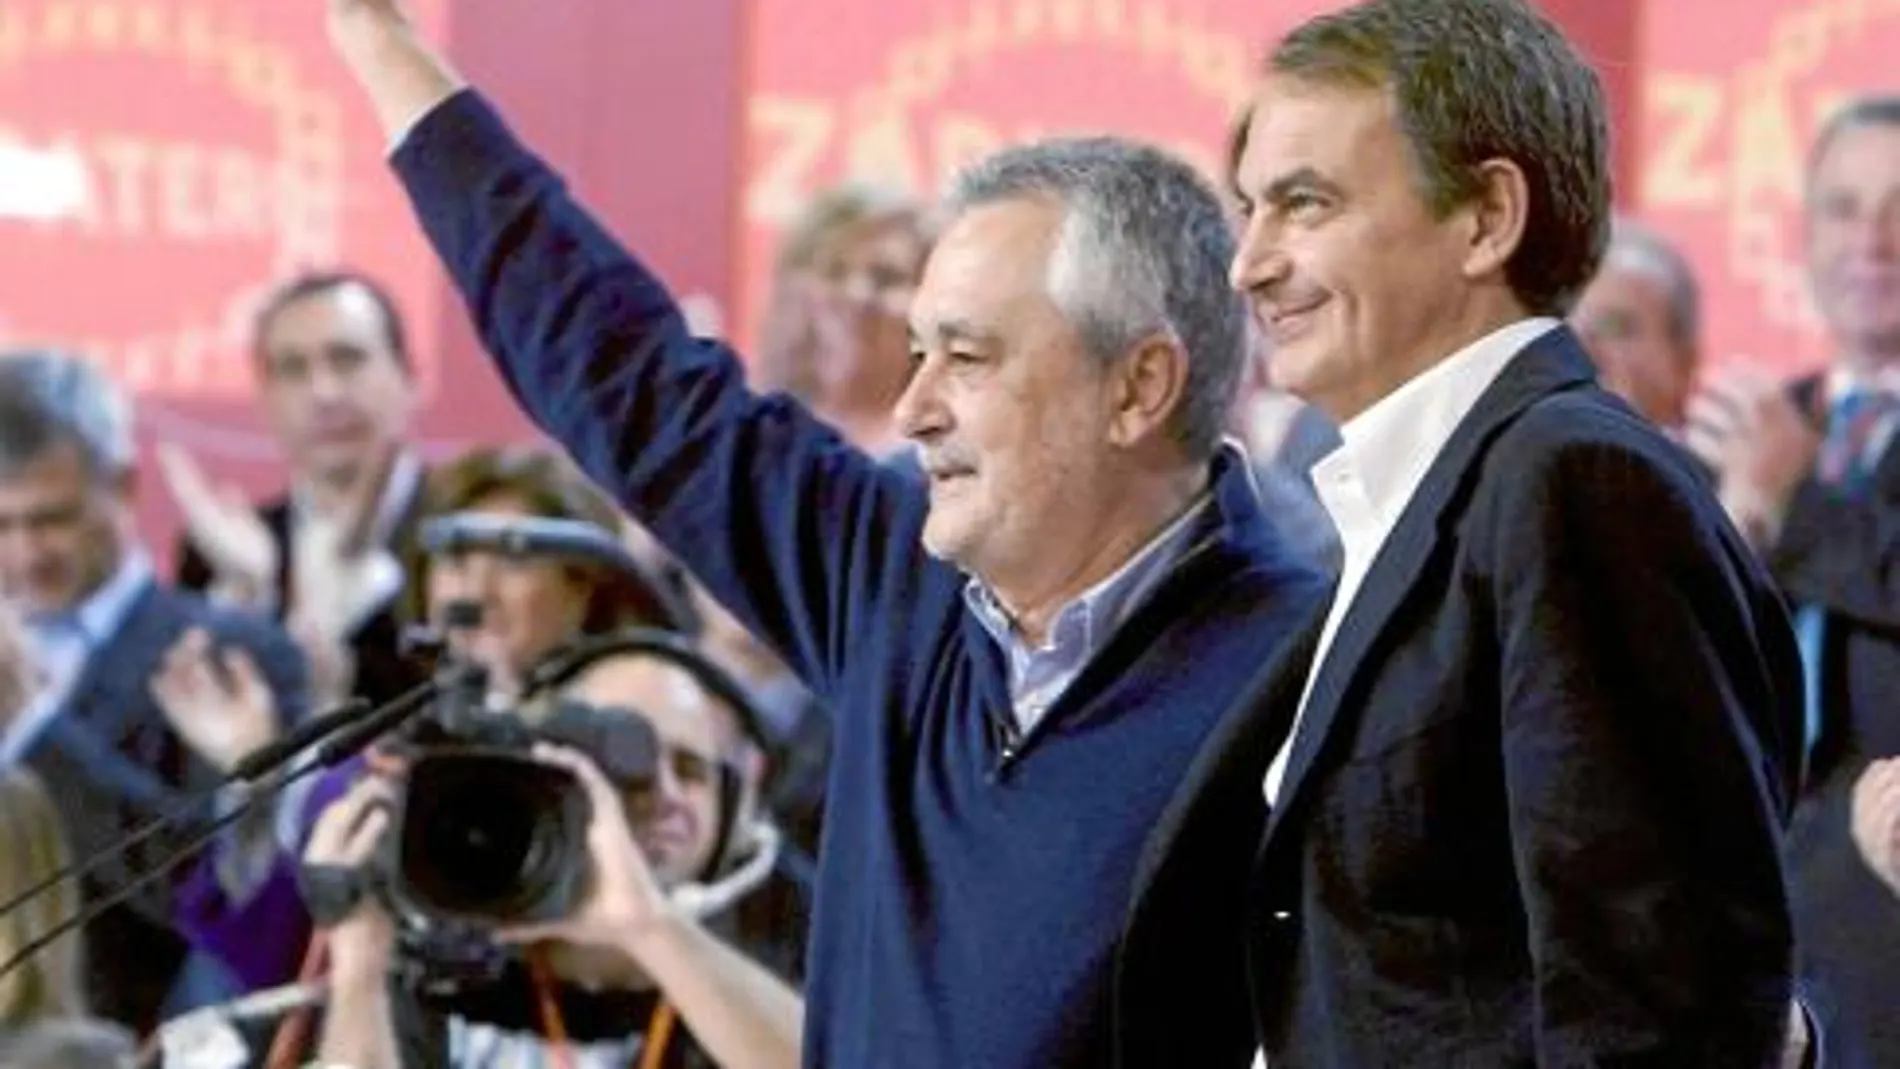 Zapatero y Griñán centraron sus discursos en críticas al PP y no hablaron sobre los ERE